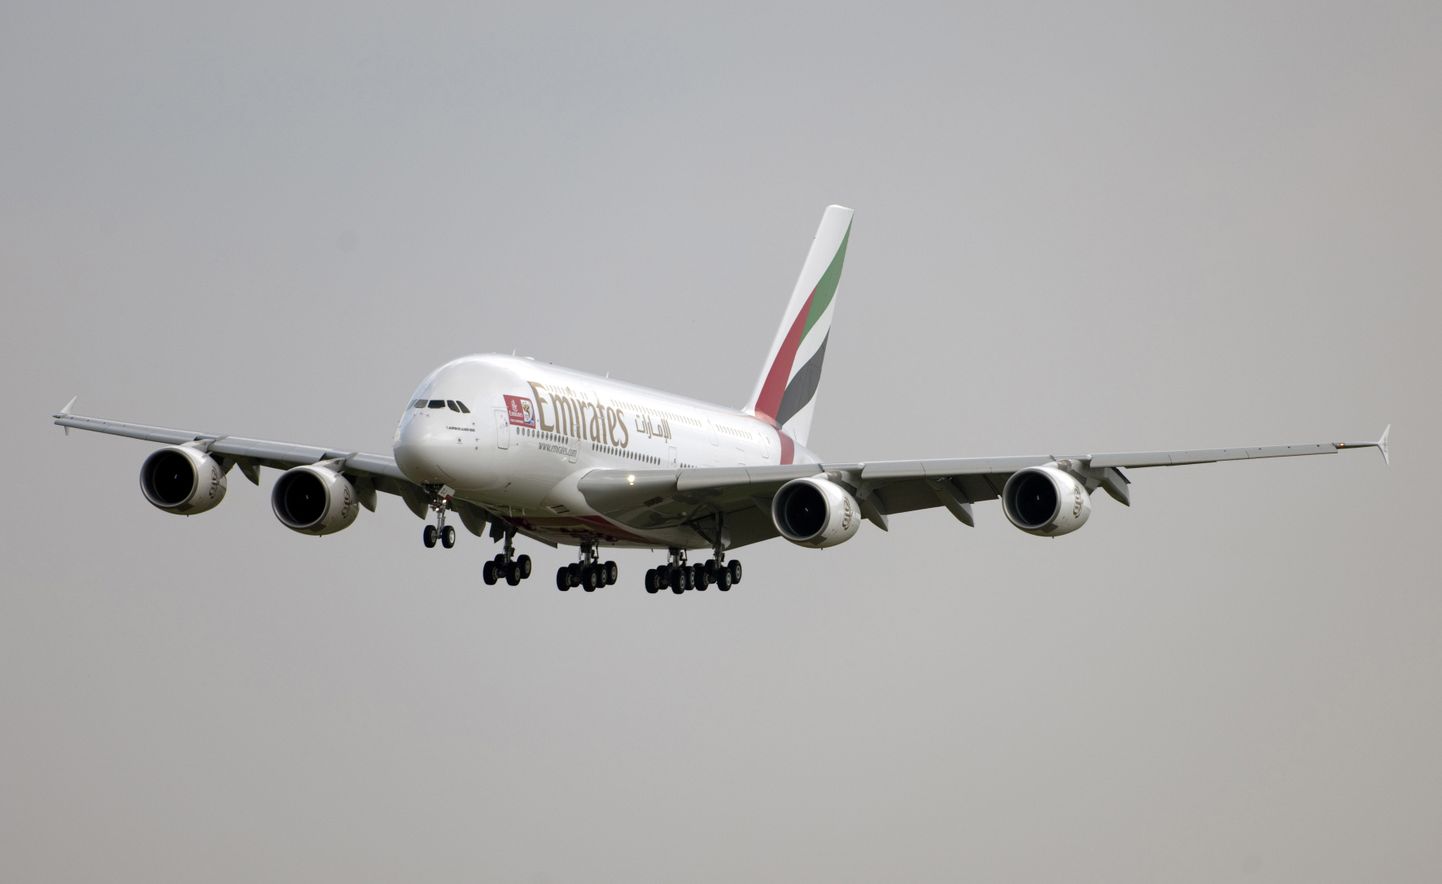 Noor naine muutus Emiratesi lennul vägivaldseks. Foto on illustreeriv.